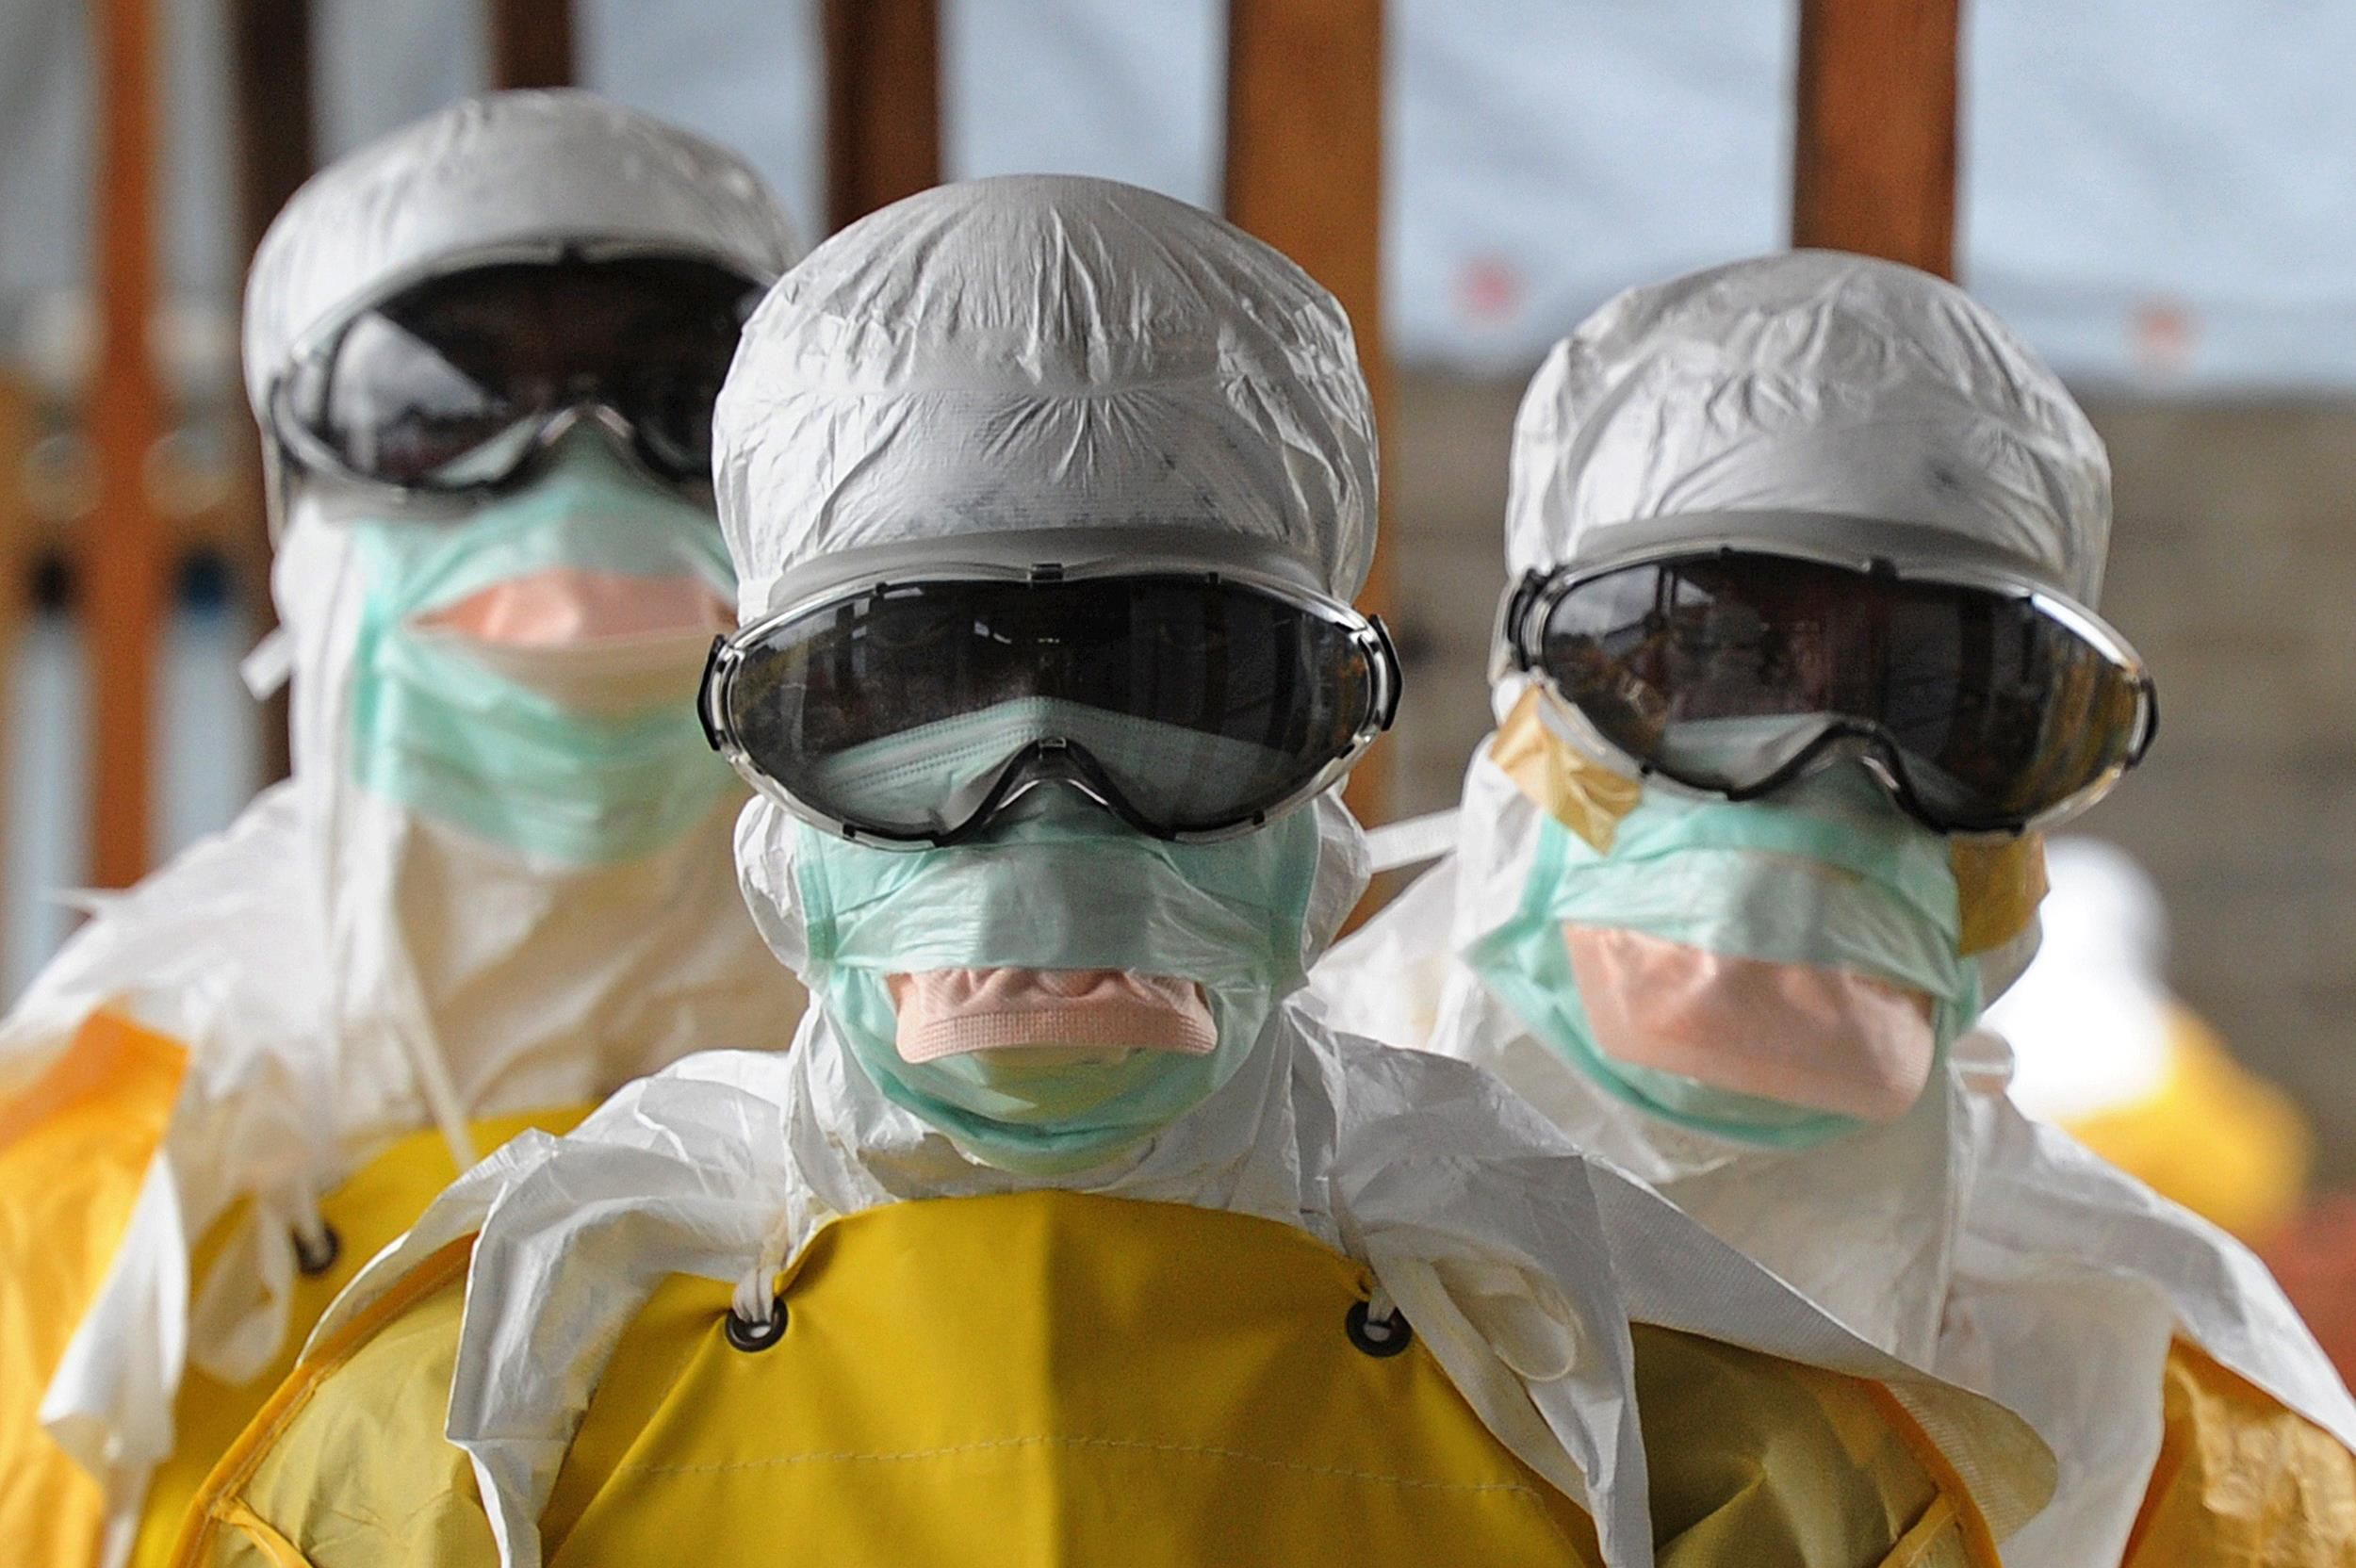 Cooperante sardo ricoverato a Sassari per sospetto caso di Ebola